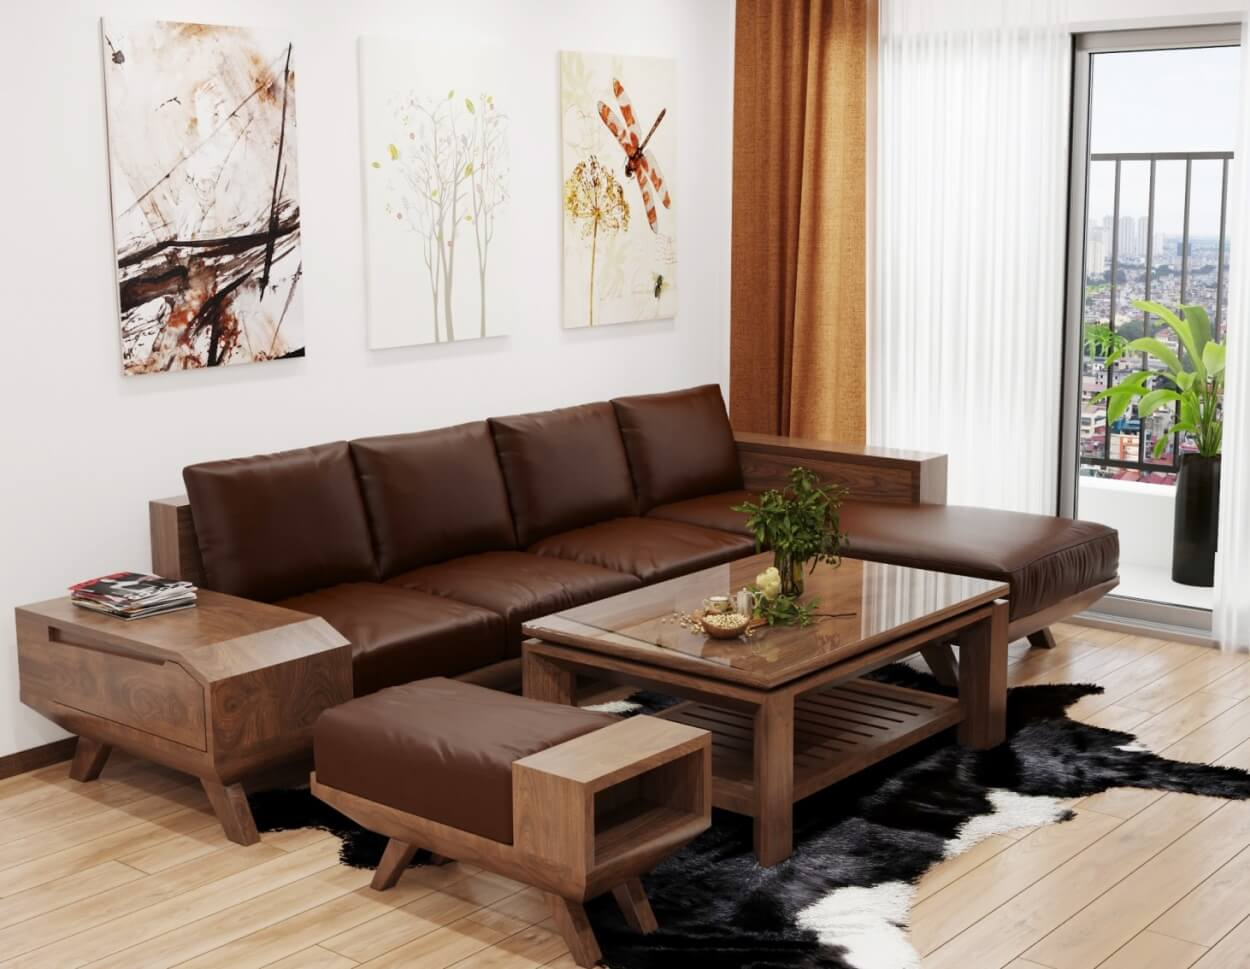 Những mẫu sofa gỗ cho phòng khách nhỏ, bộ bàn ghế gỗ nhỏ gọn